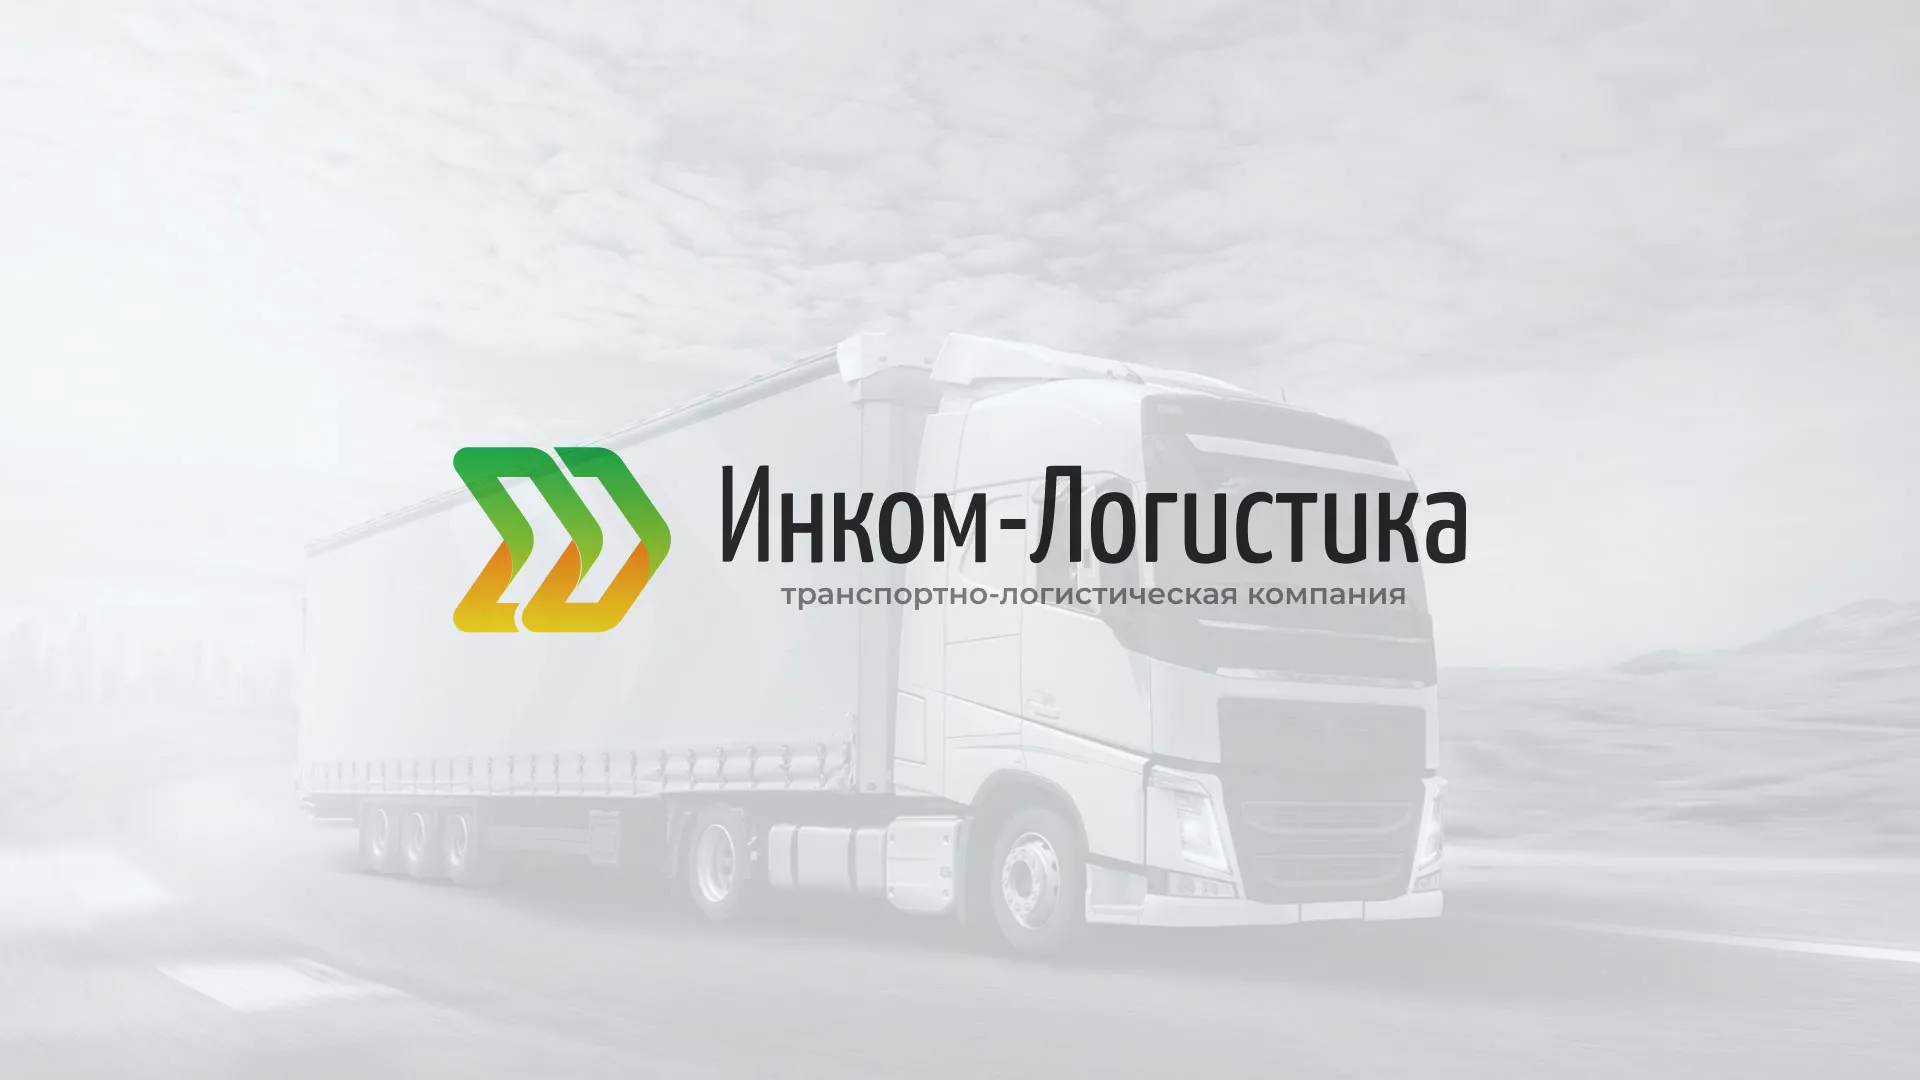 Разработка логотипа и сайта компании «Инком-Логистика» в Юрьевце